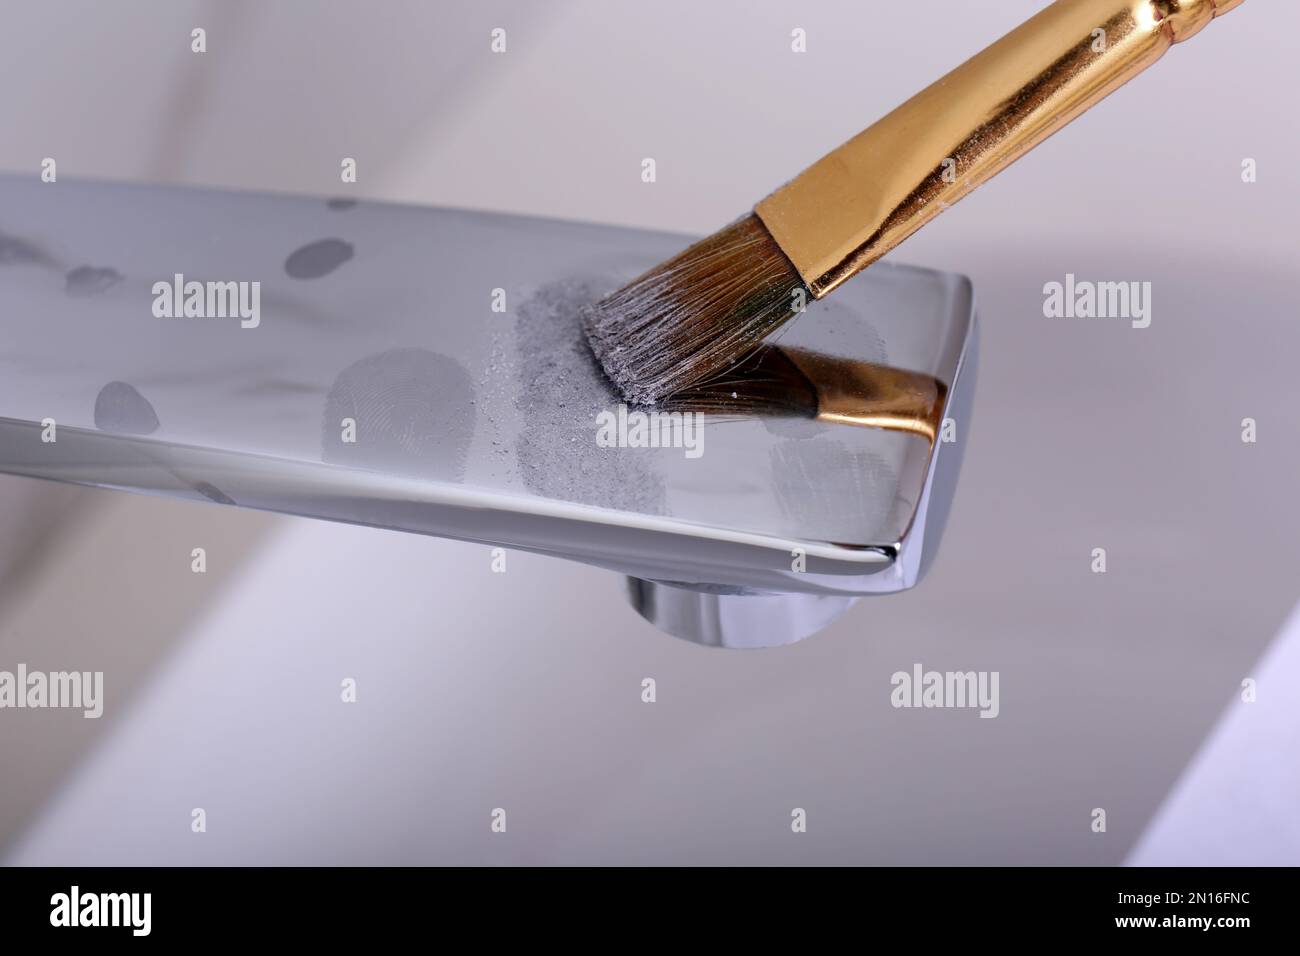 Utilisez un pinceau et de la poudre pour révéler les traces de doigts sur le robinet à l'intérieur, en gros plan Banque D'Images